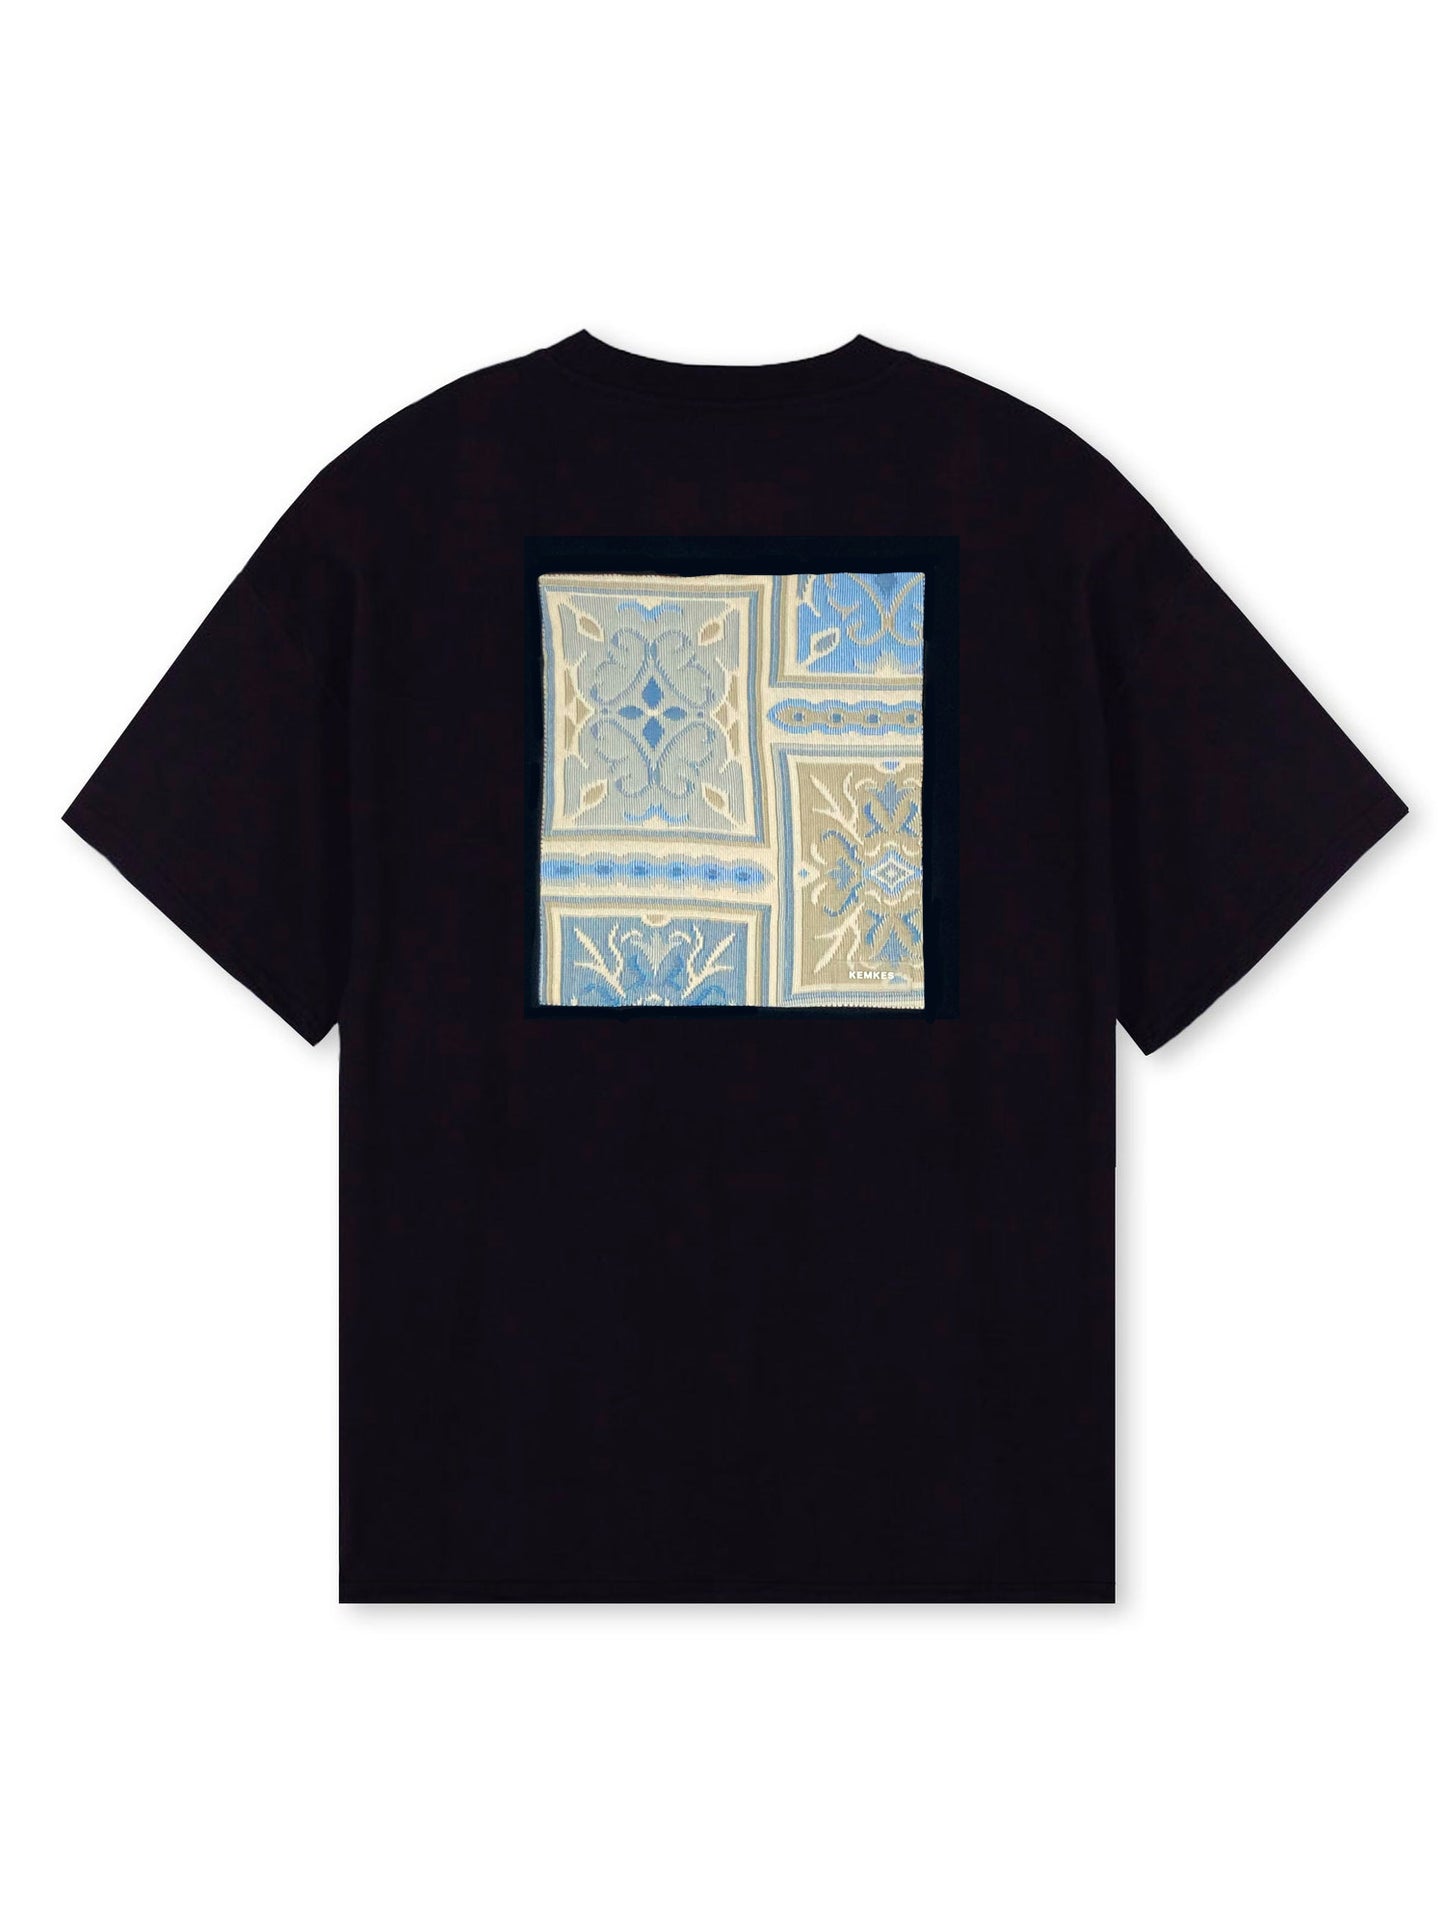 T-shirt artwork jacquard blue